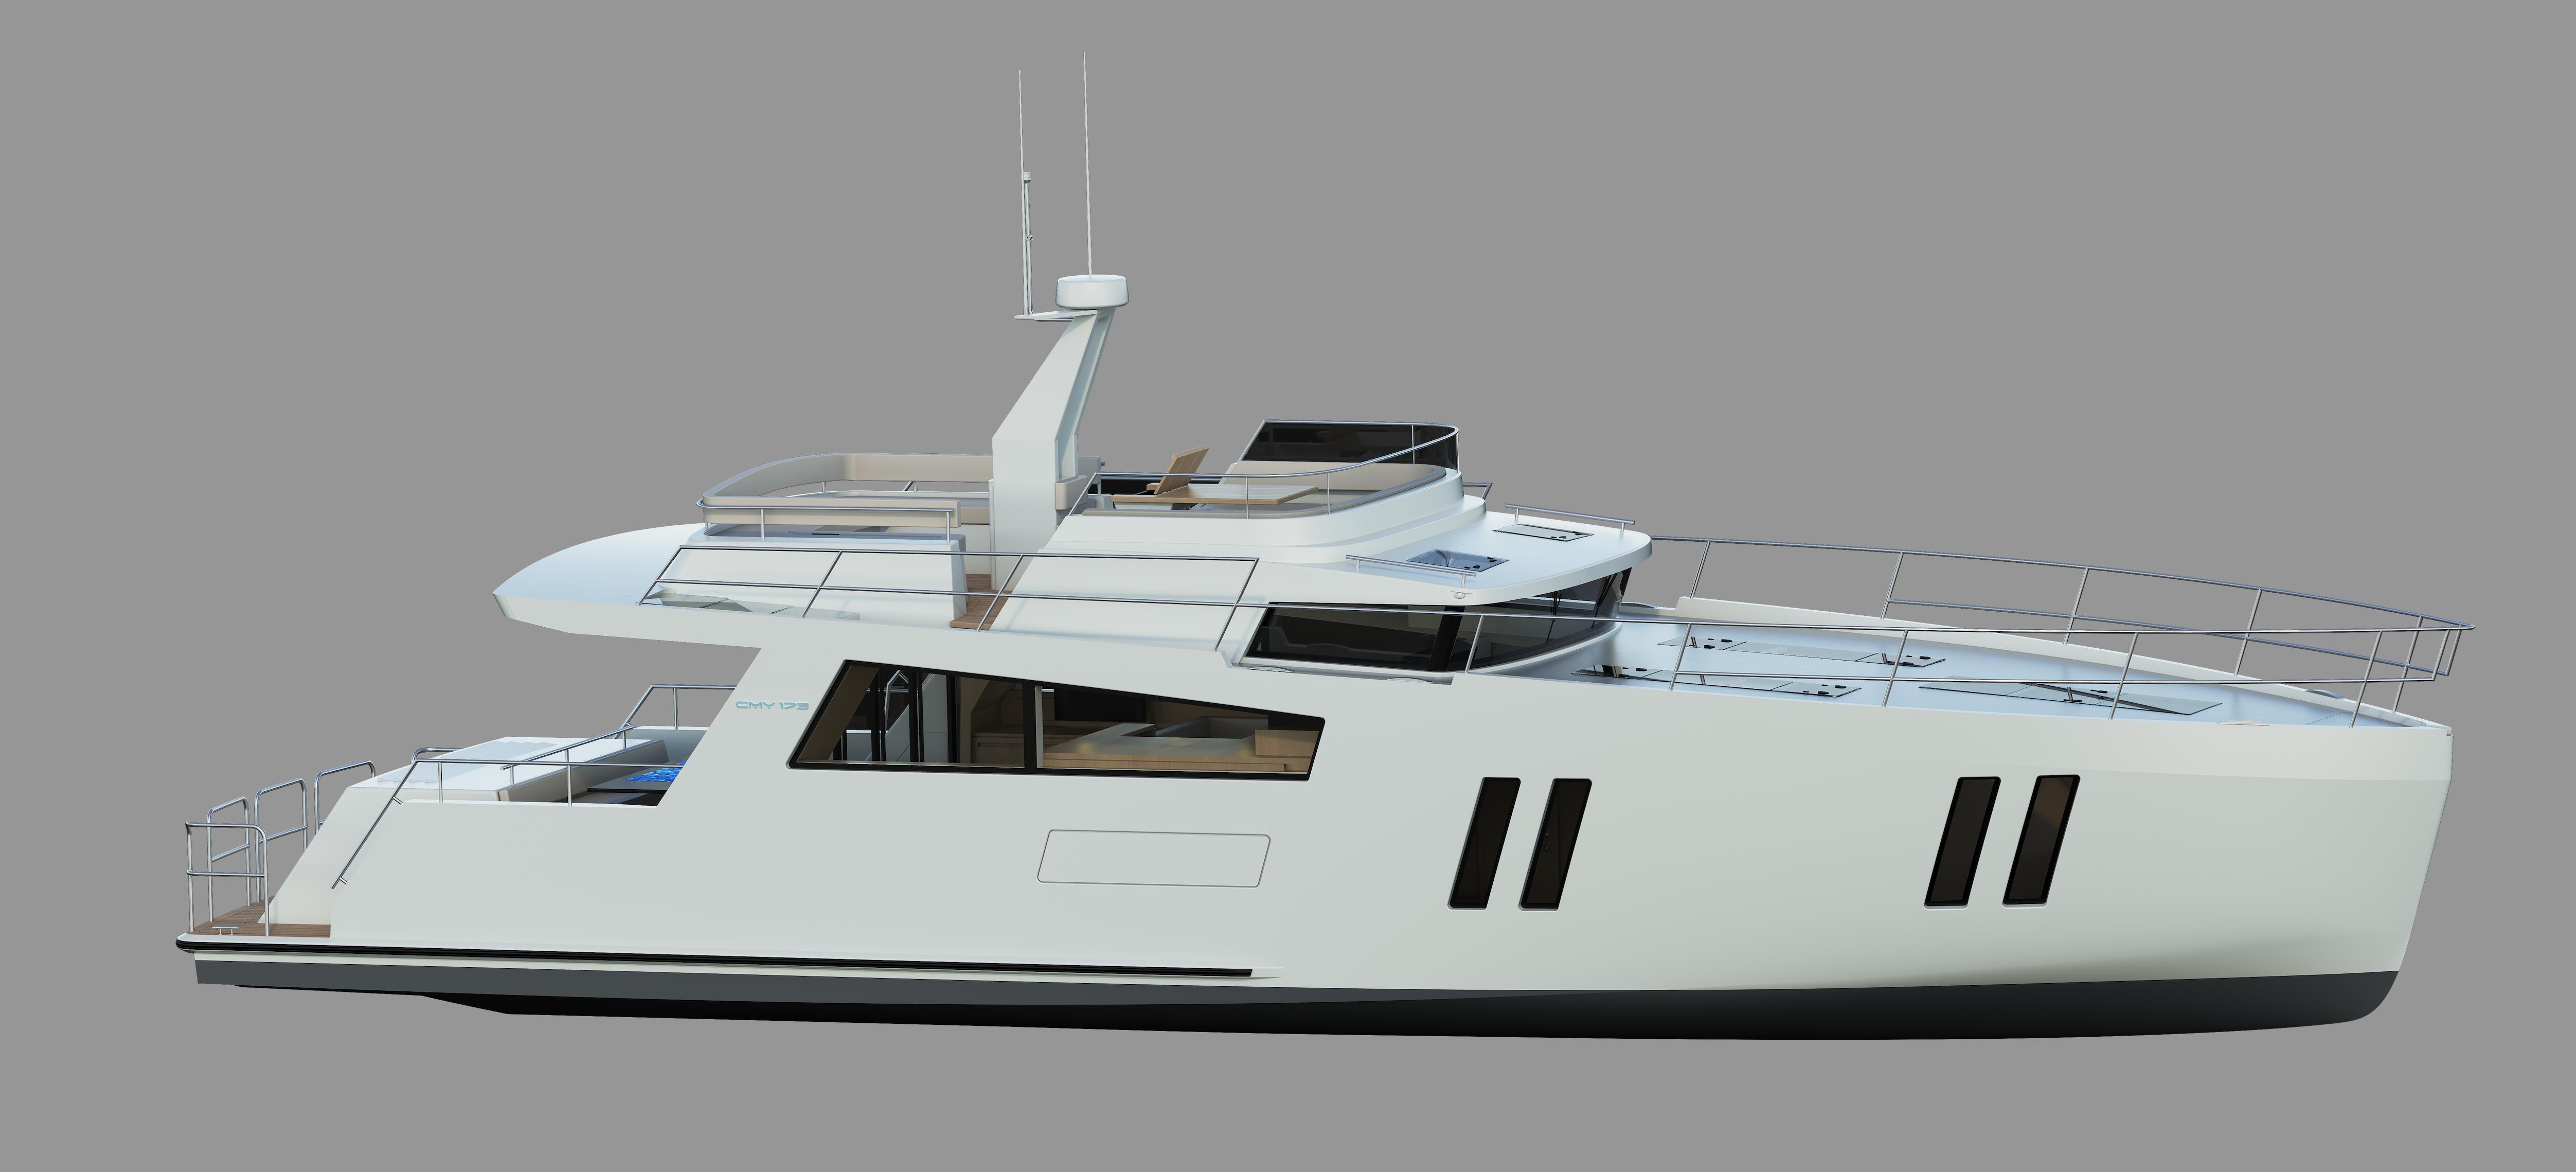 2022 mega yachts for sale